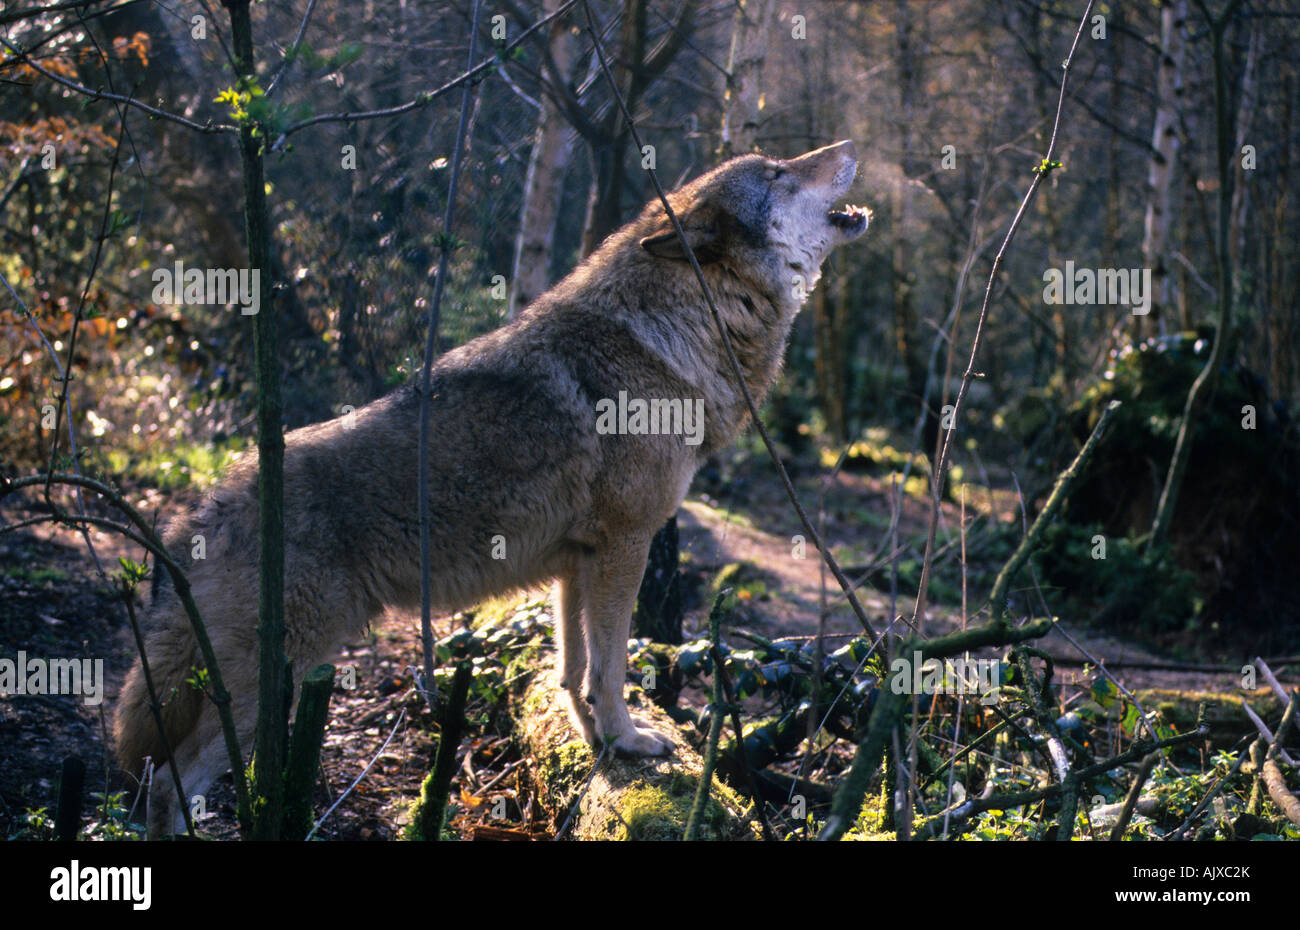 Europäischer Wolf heulend Canis lupus Wolfspark Werner Freund Merzig Saarland | european wolf howling, Merzig Saarland Stock Photo